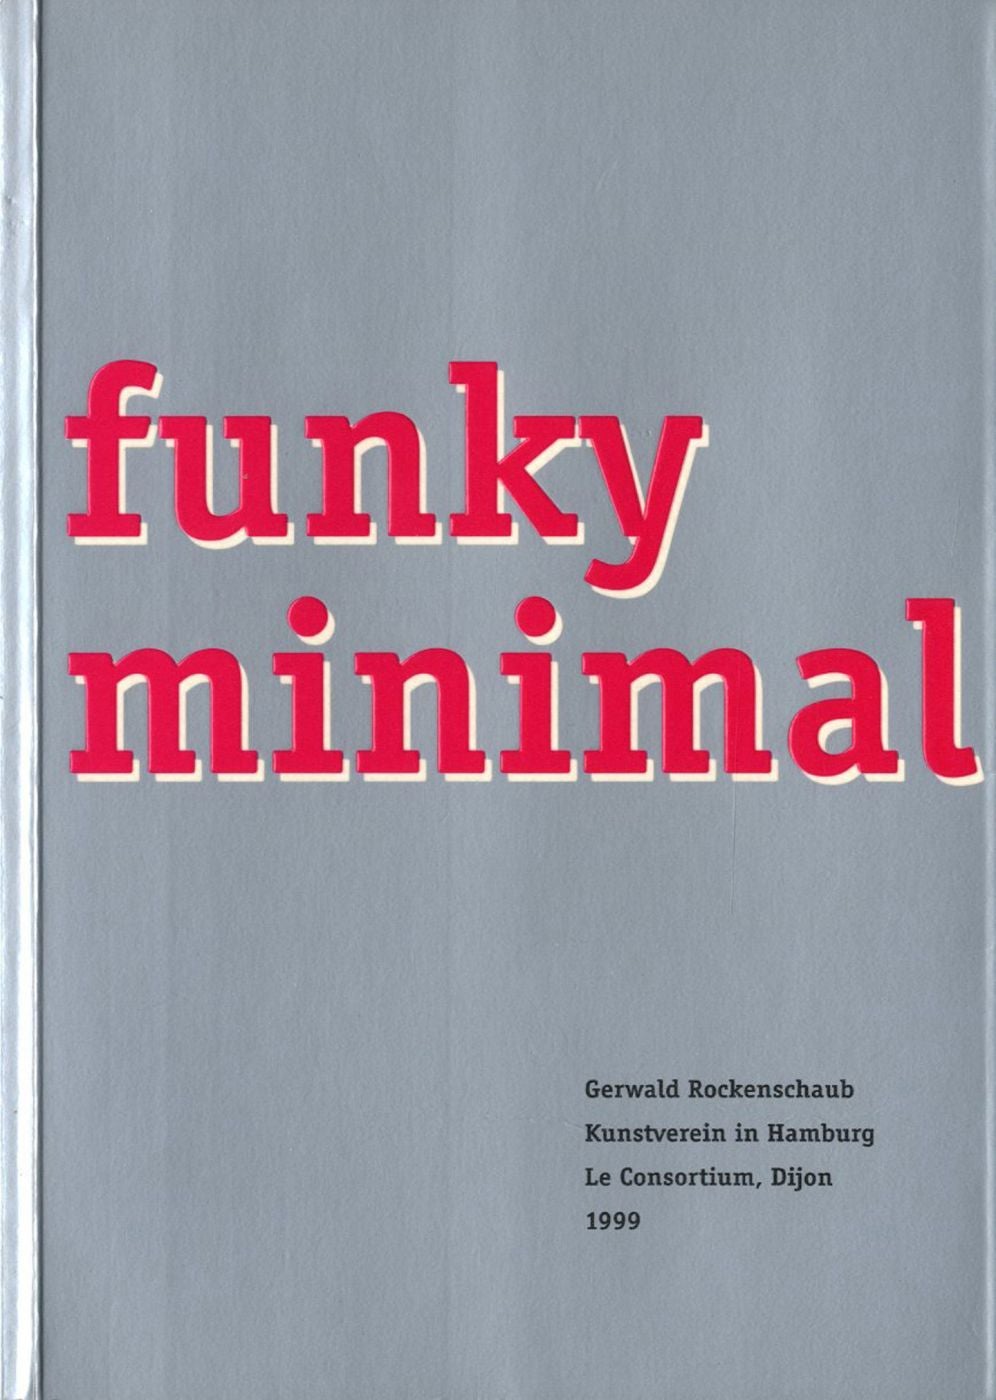 Gerwald Rockenschaub: Funky Minimal